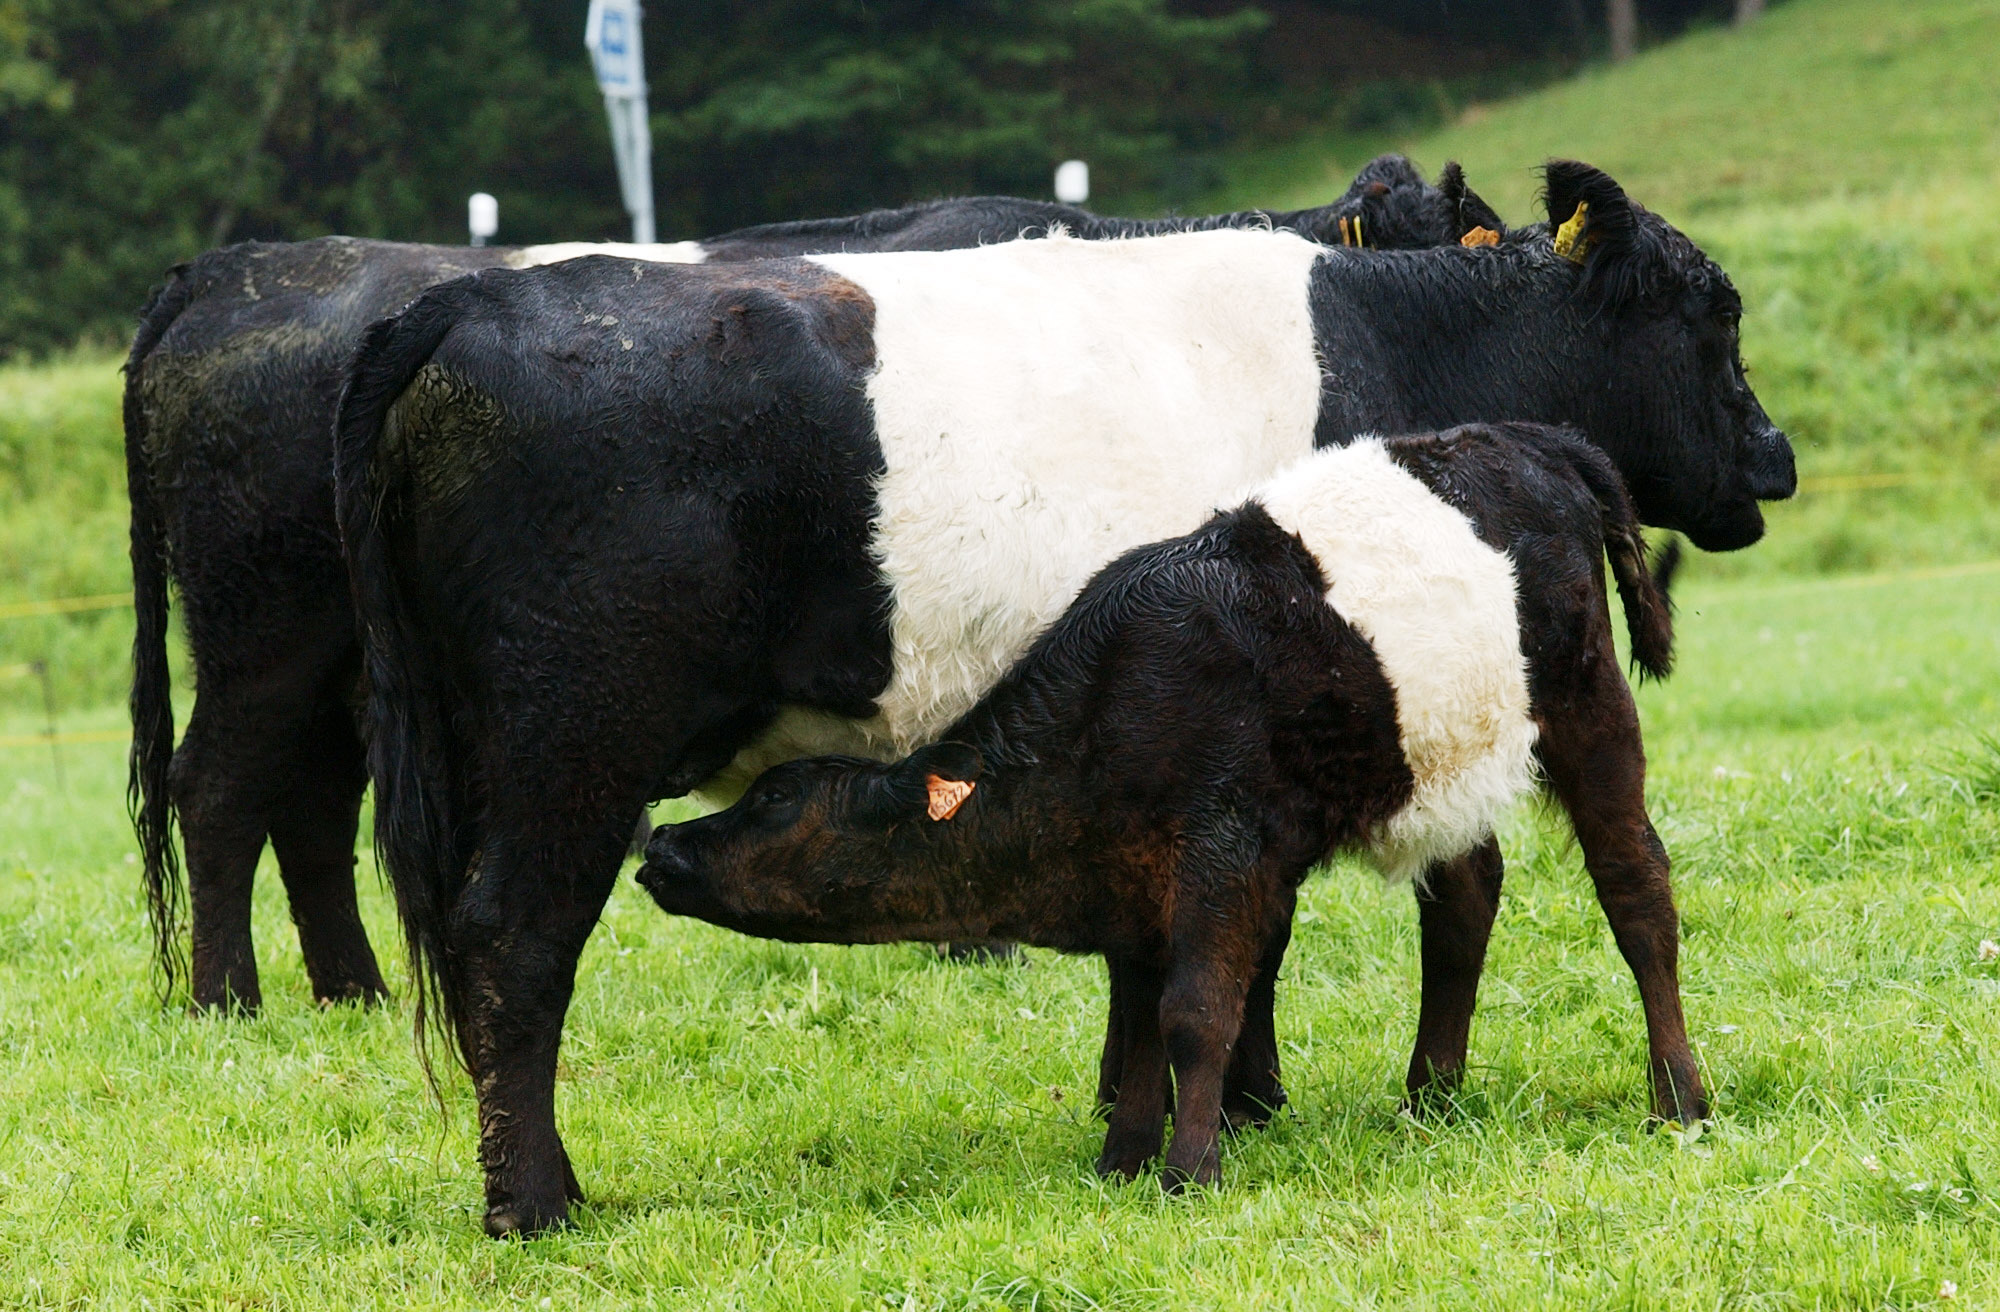 Les vaches allaitantes, reconnaissables à la présence des veaux, peuvent être agressives. Elles se sentent menacées par la présence d'un chien ou de promeneurs et cherchent à protéger leur petit.